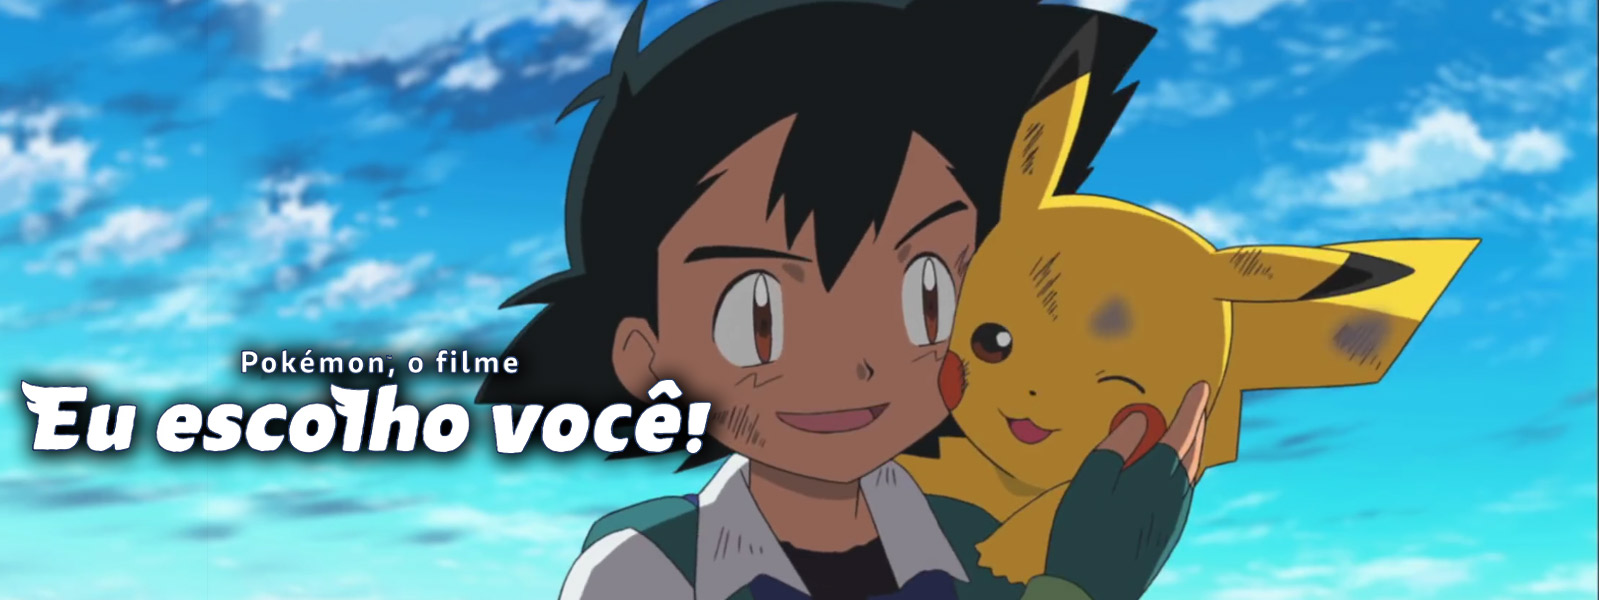 Pokémon: Eu Escolho Você (Filme), Trailer, Sinopse e Curiosidades - Cinema10